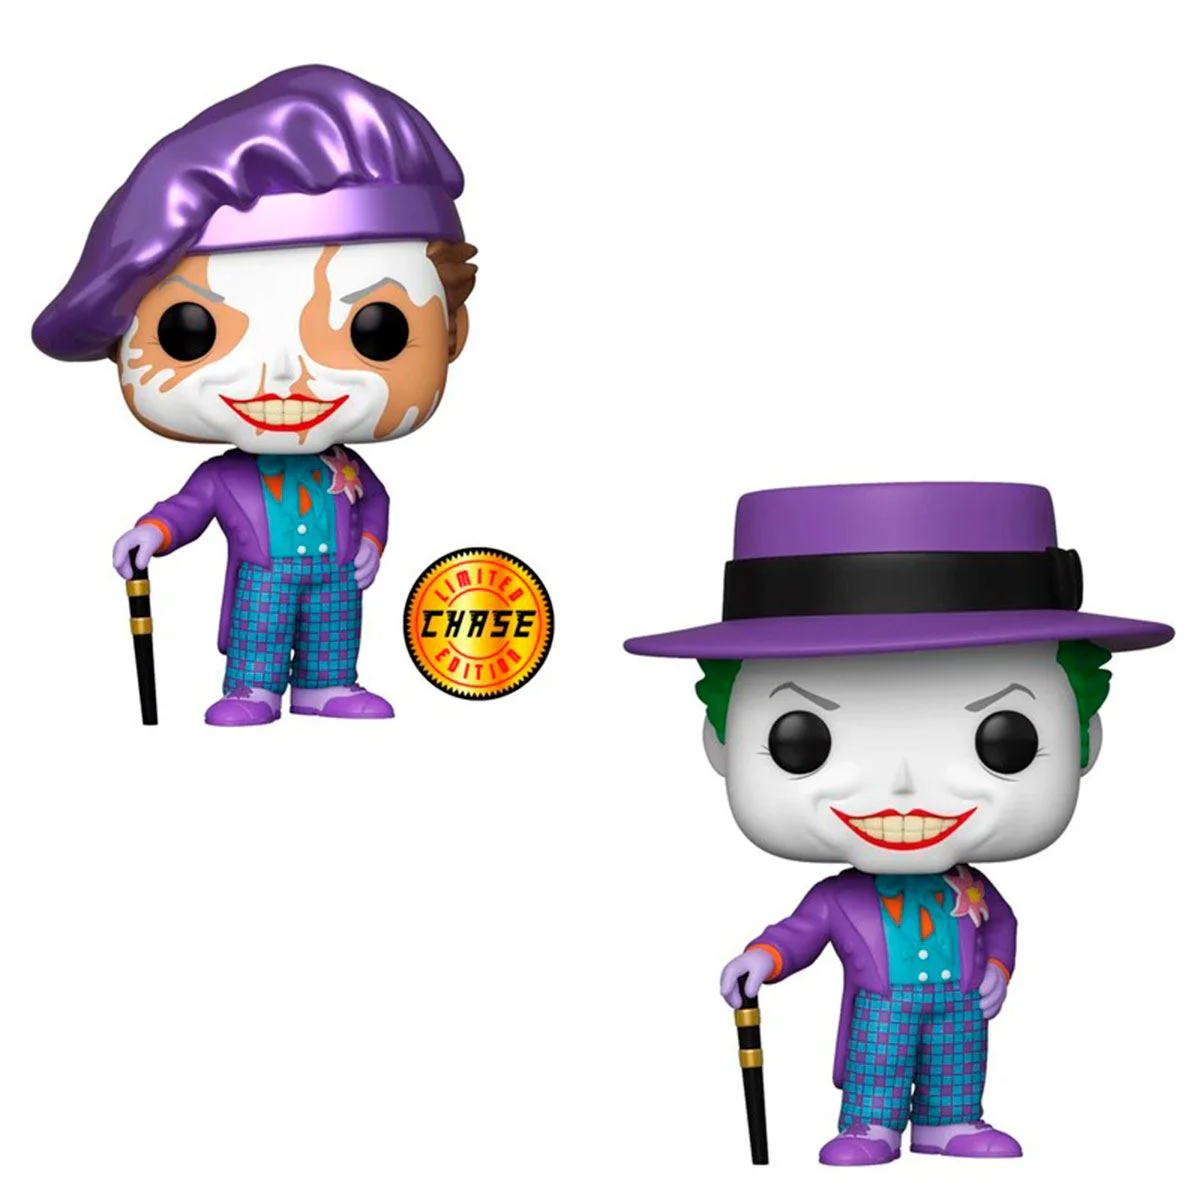 Виниловая игровая фигурка Funko Pop! The Joker with hat / chase